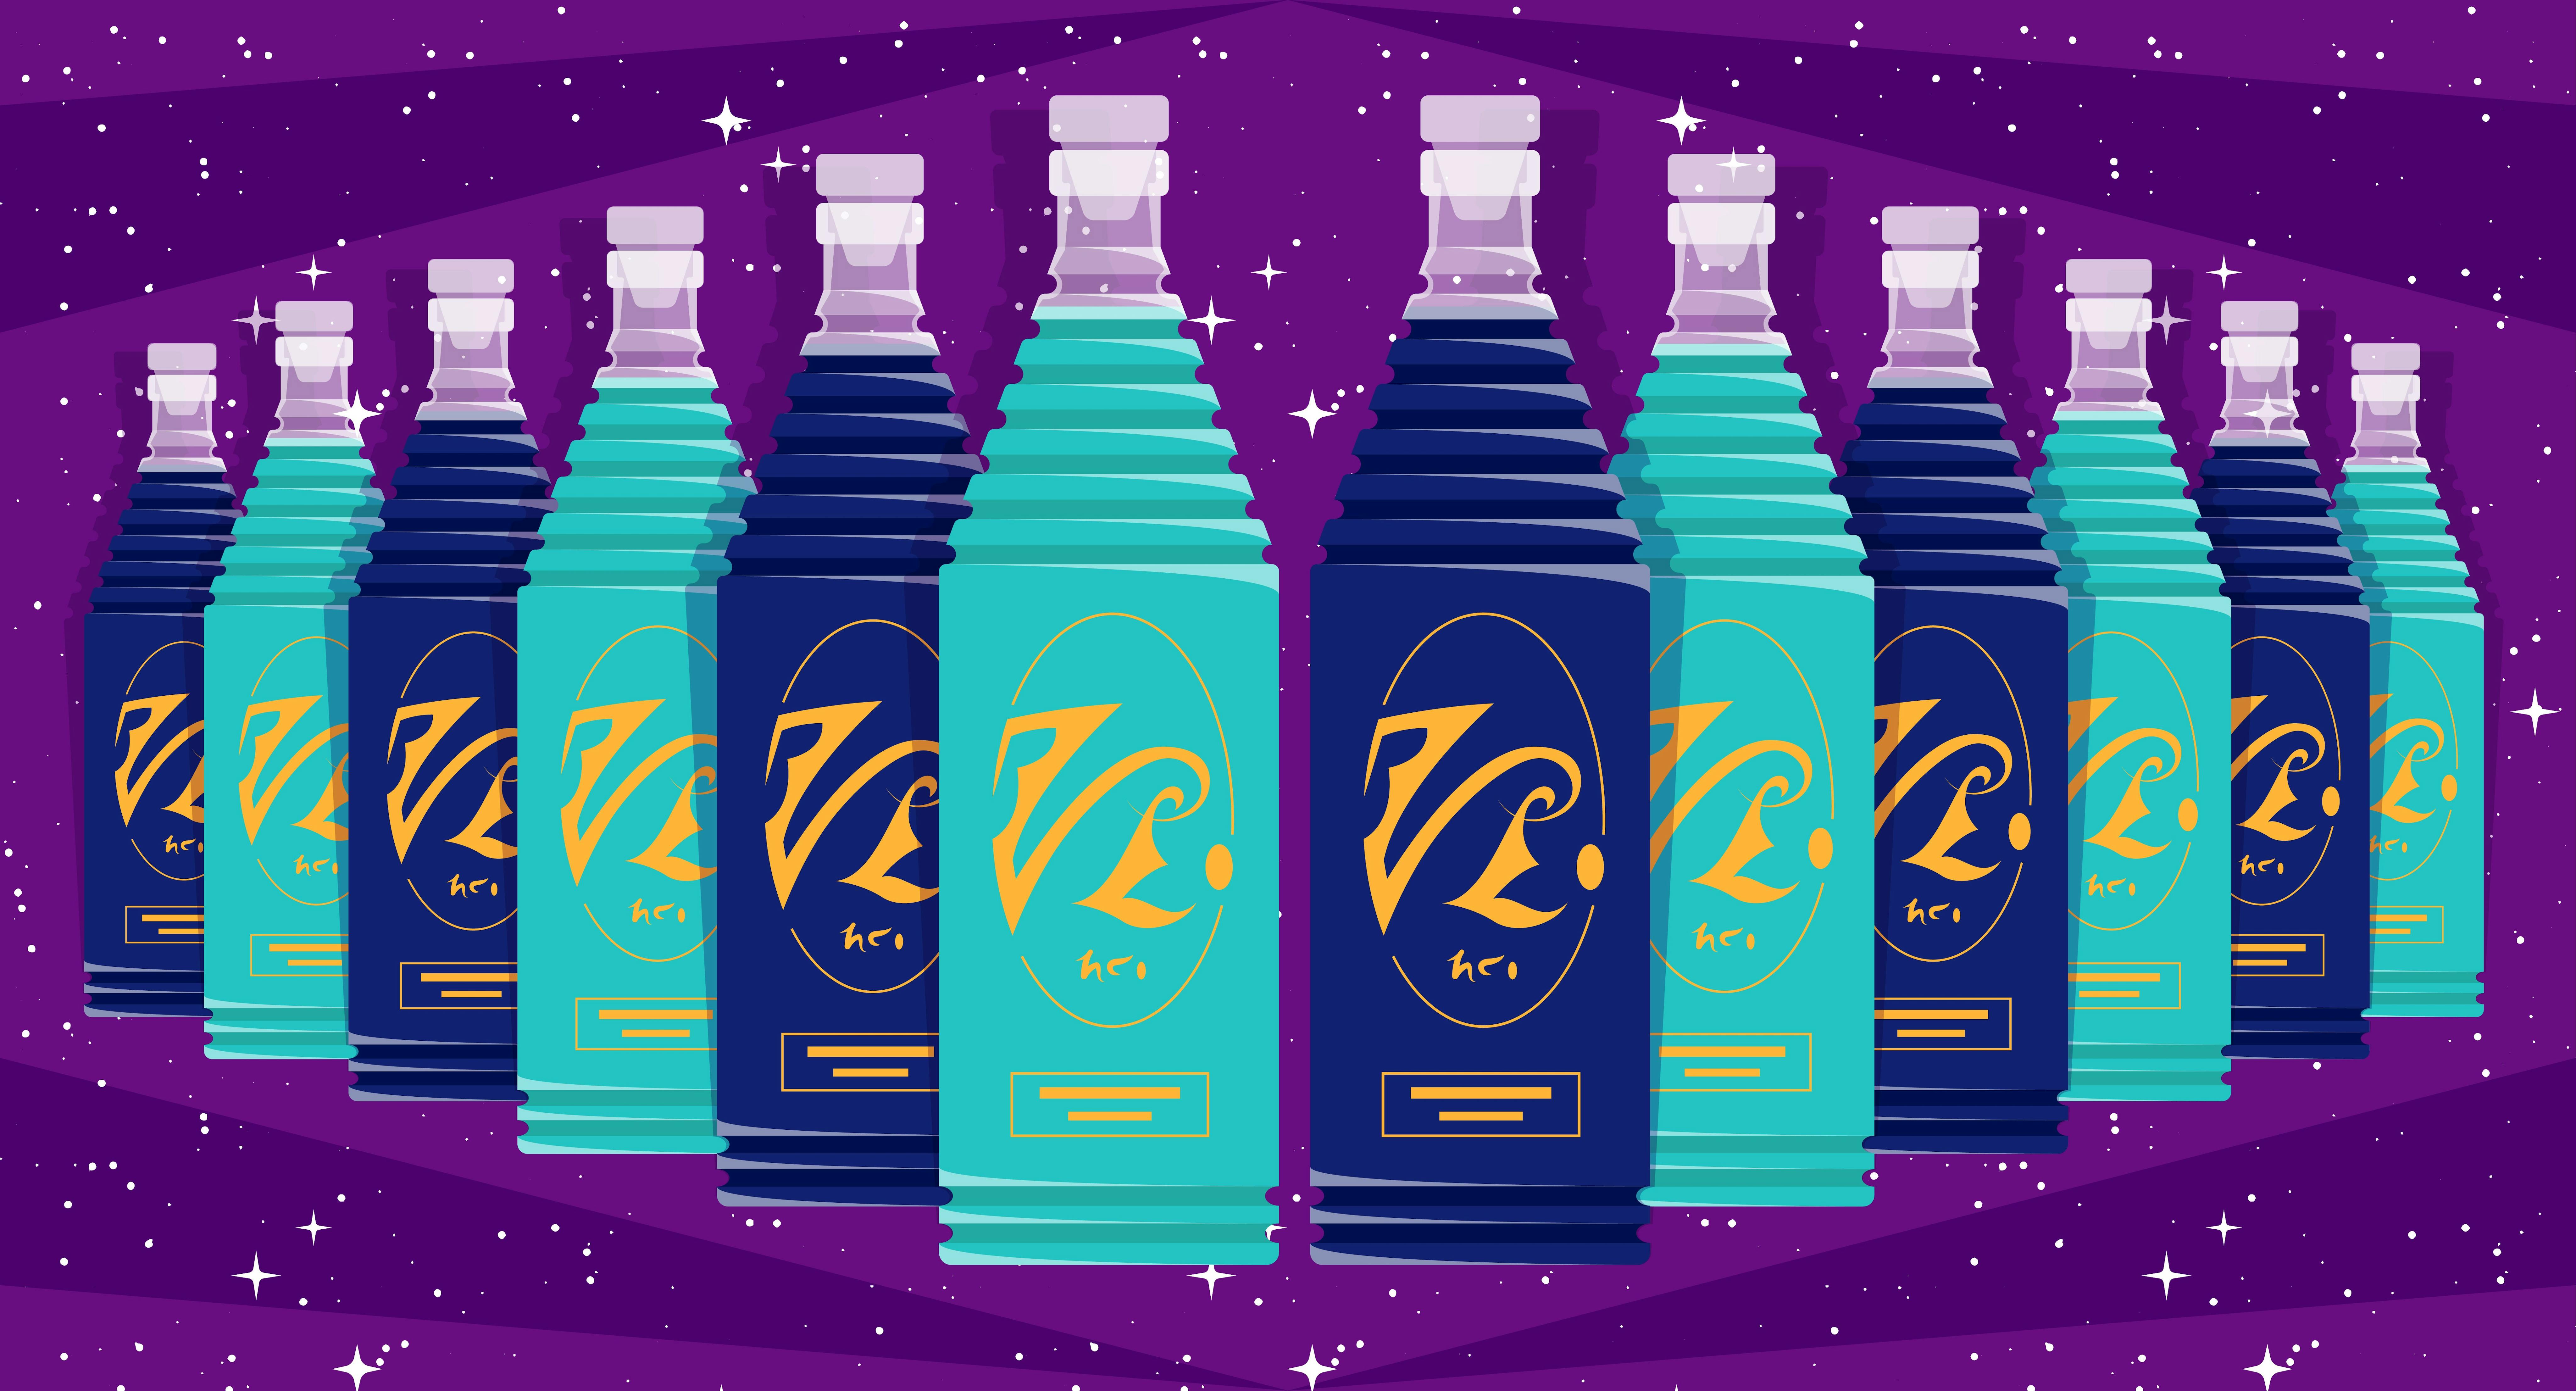 Illustrated banner of Star Trek Spirits' Romulan Ale whiskey and vodka bottles